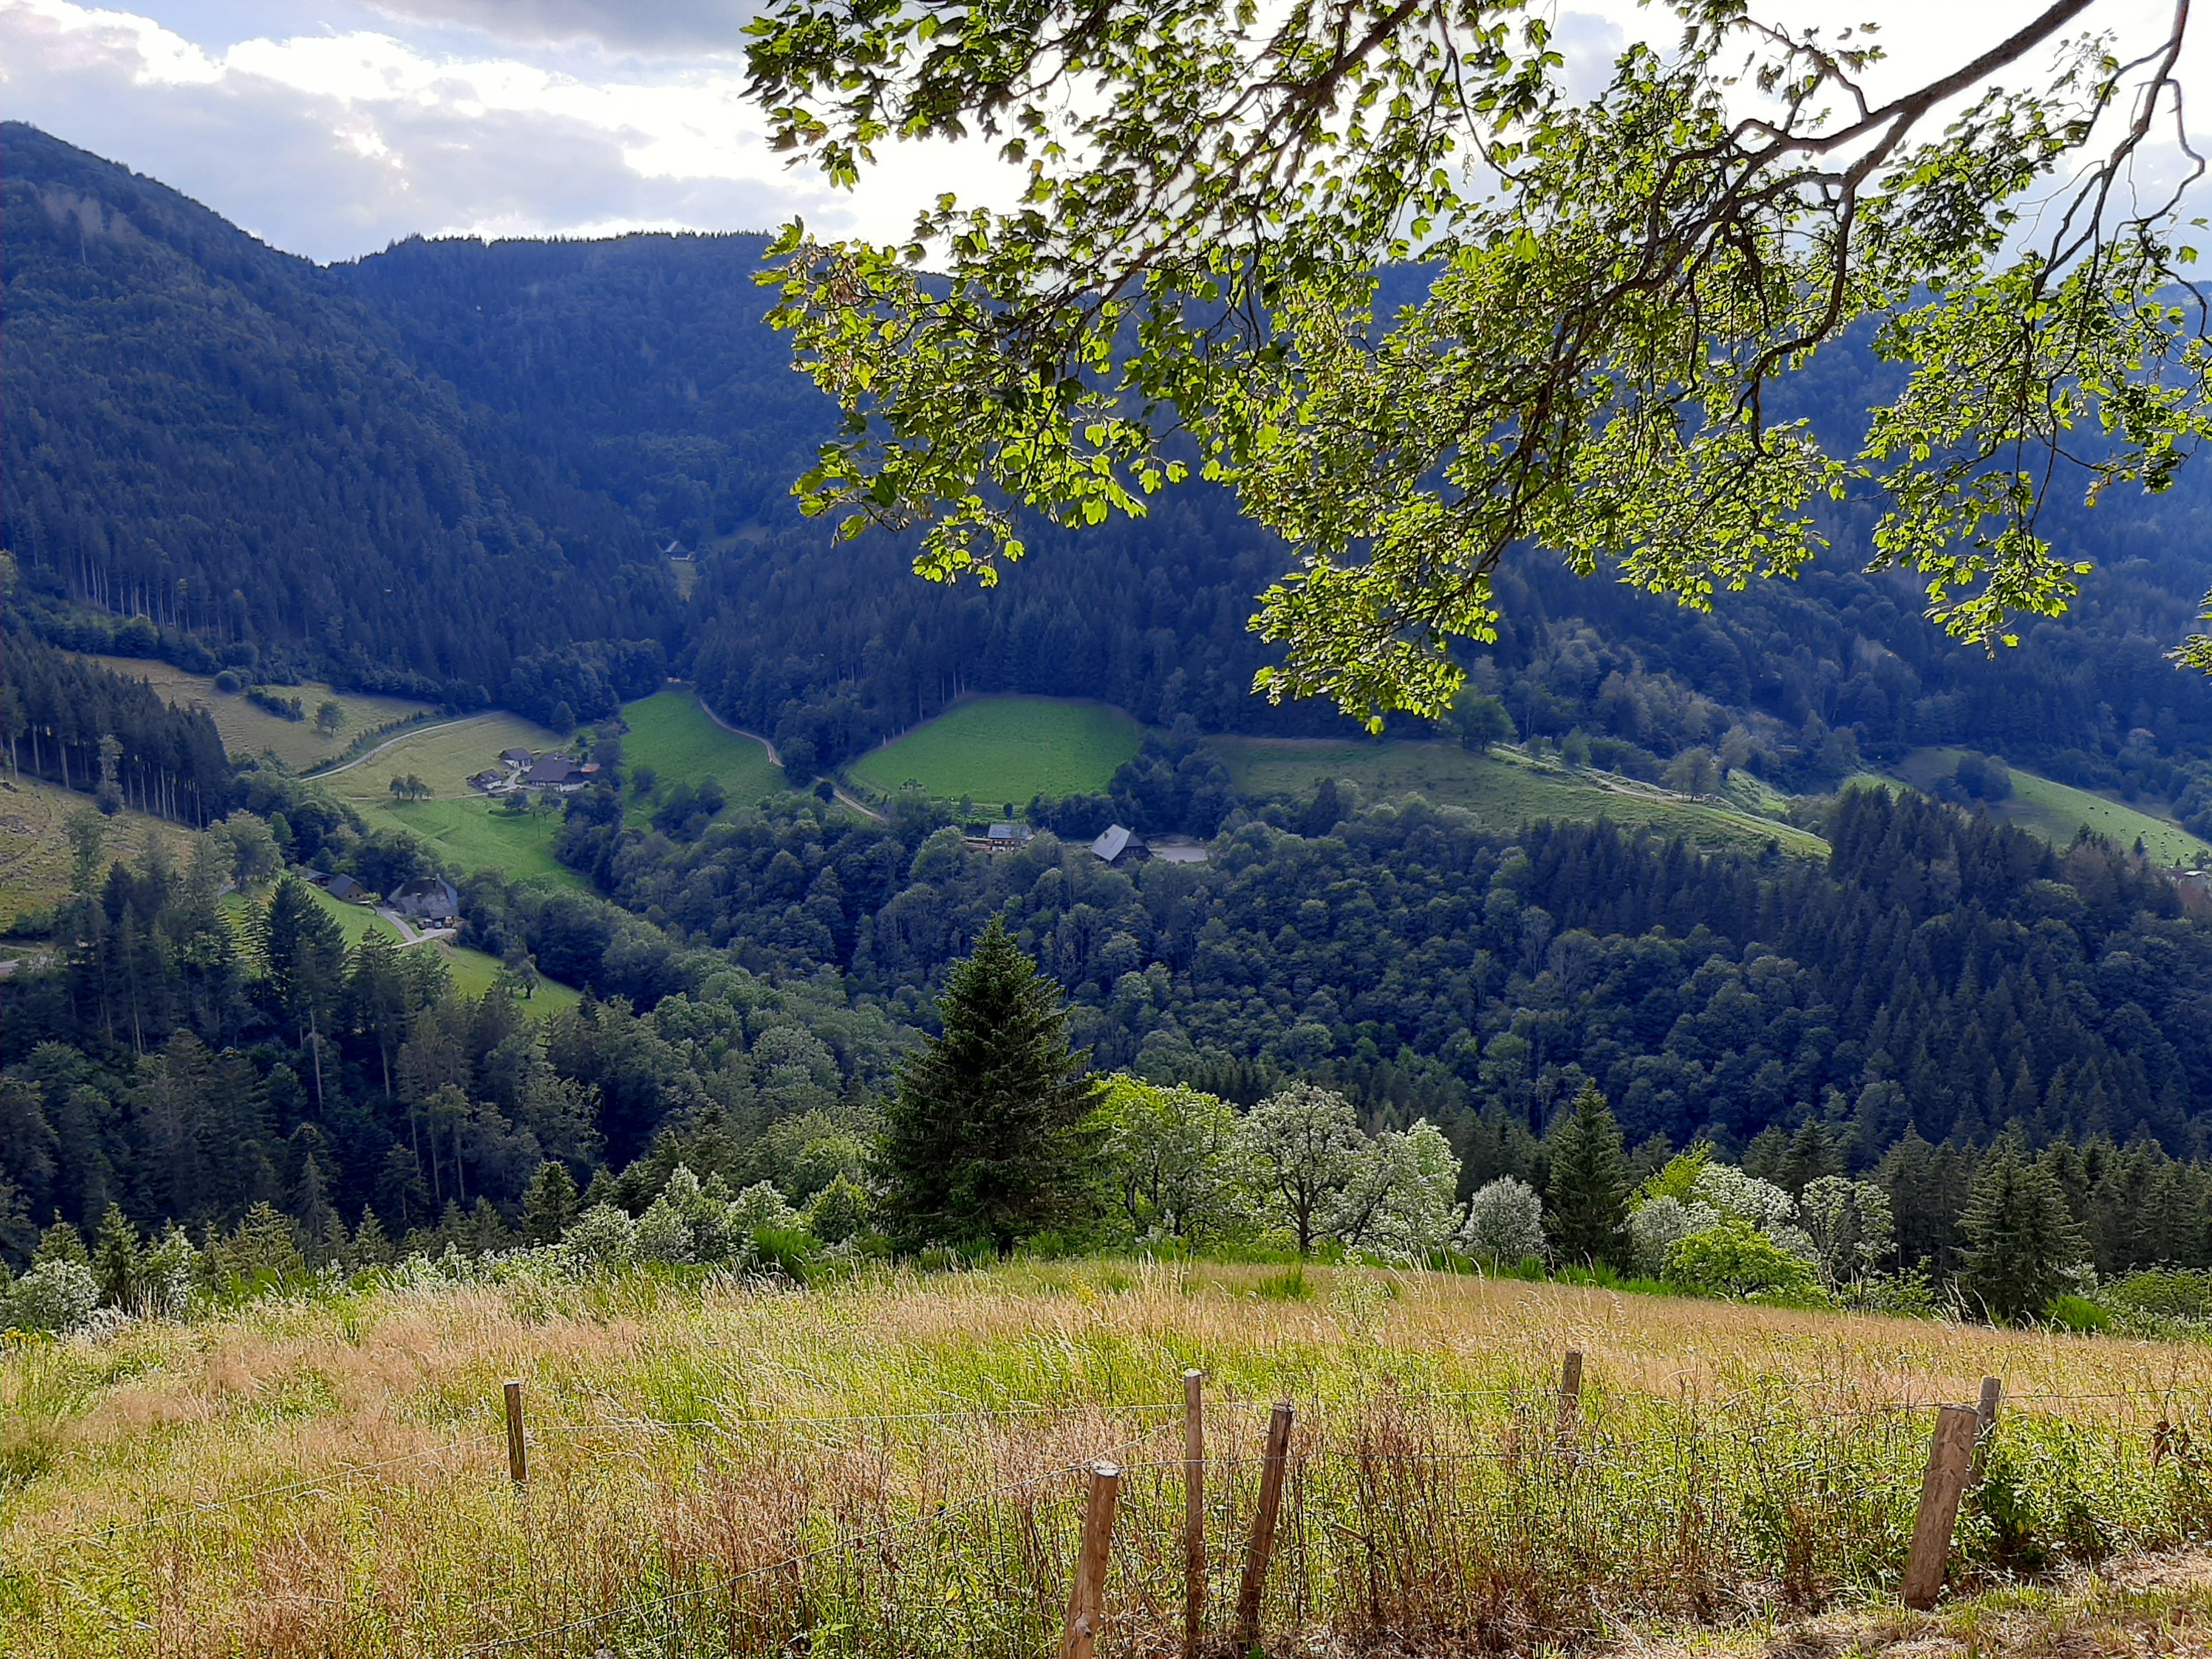 Von Freiburg aus wieder nach Hause.
#Schwarzwald #Natur #ausblick 